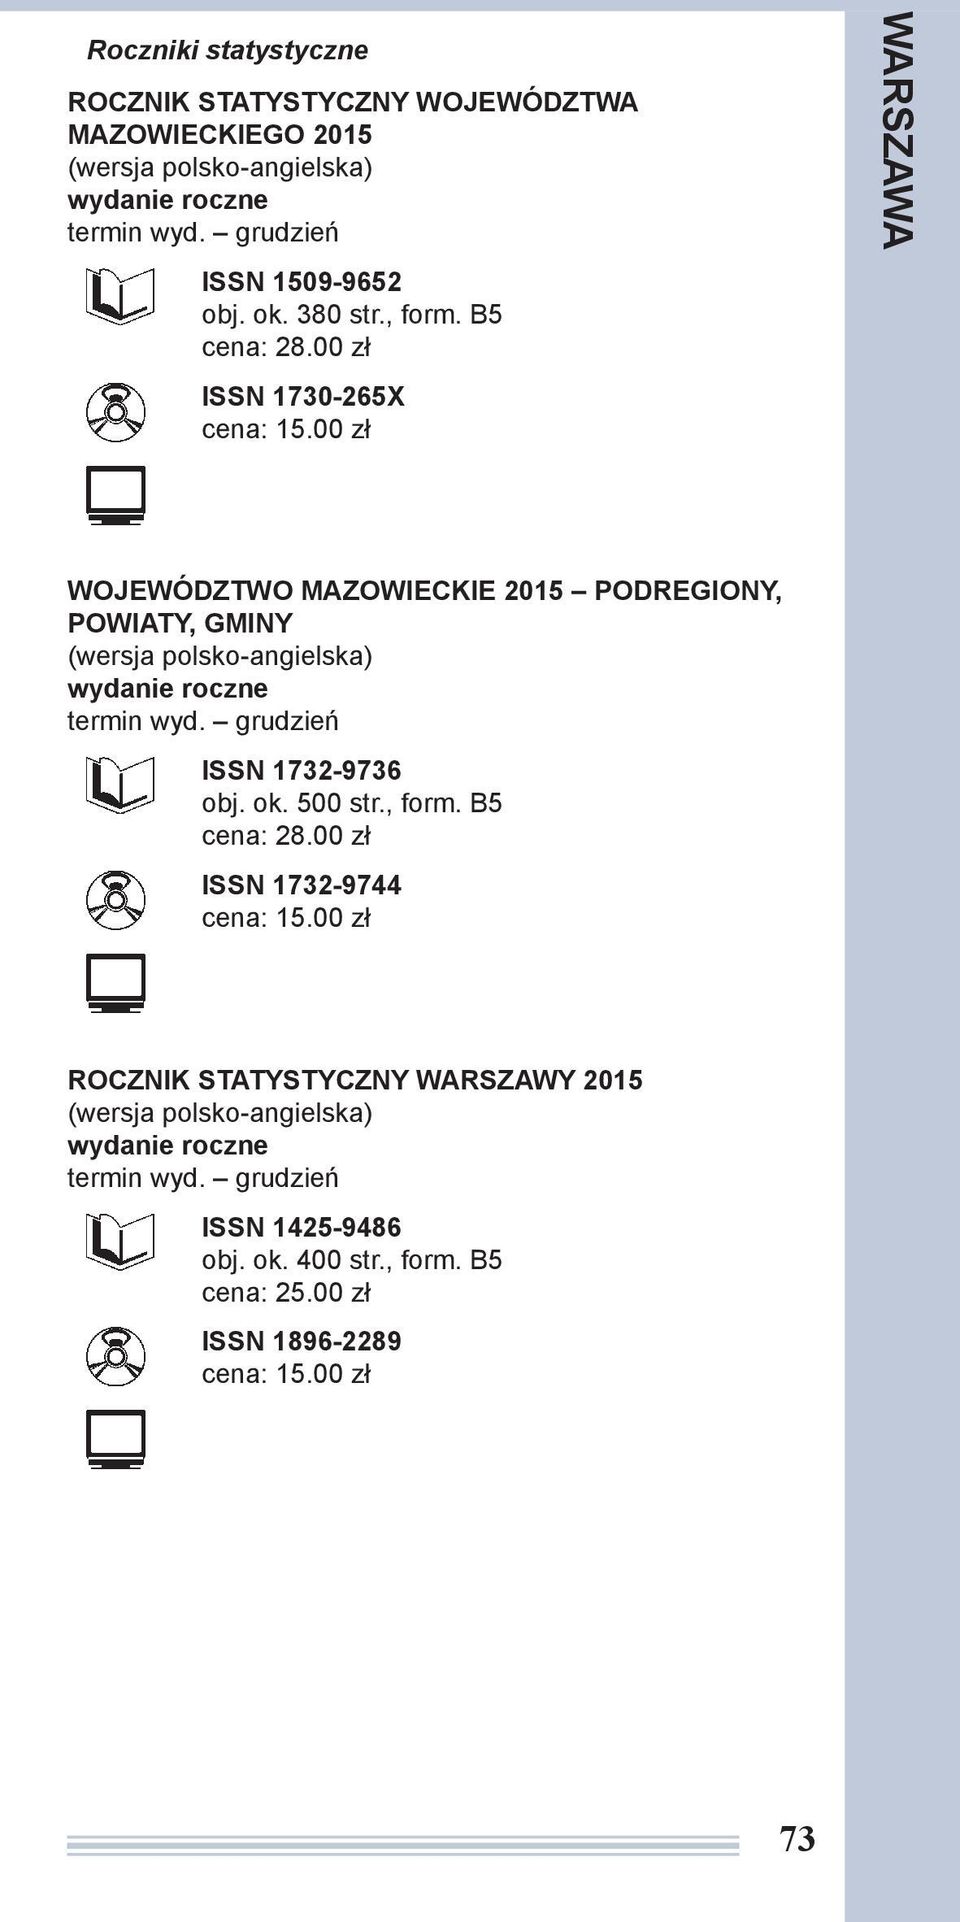 00 zł ISSN 1730-265X WOJEWÓDZTWO MAZOWIECKIE 2015 PODREGIONY, POWIATY, GMINY ISSN 1732-9736 obj.